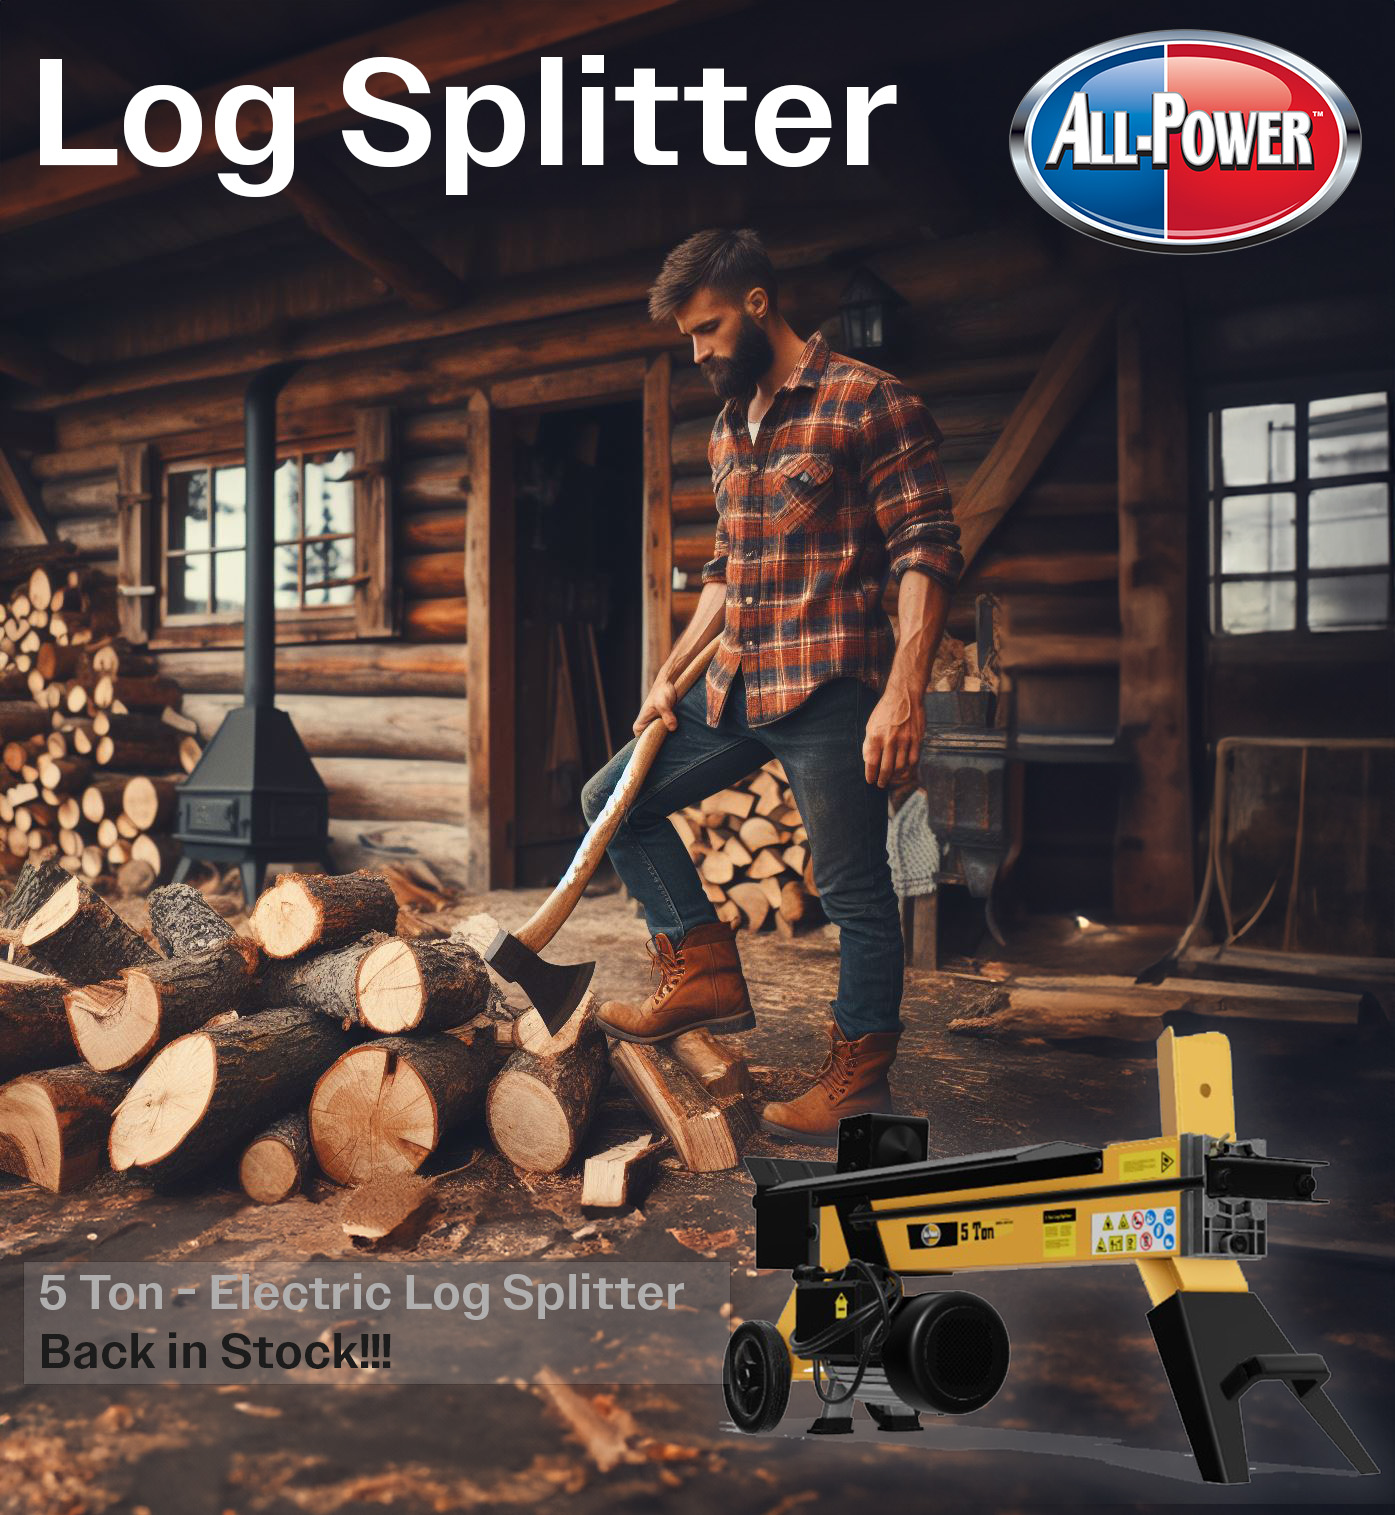 All-Power, Log Splitter